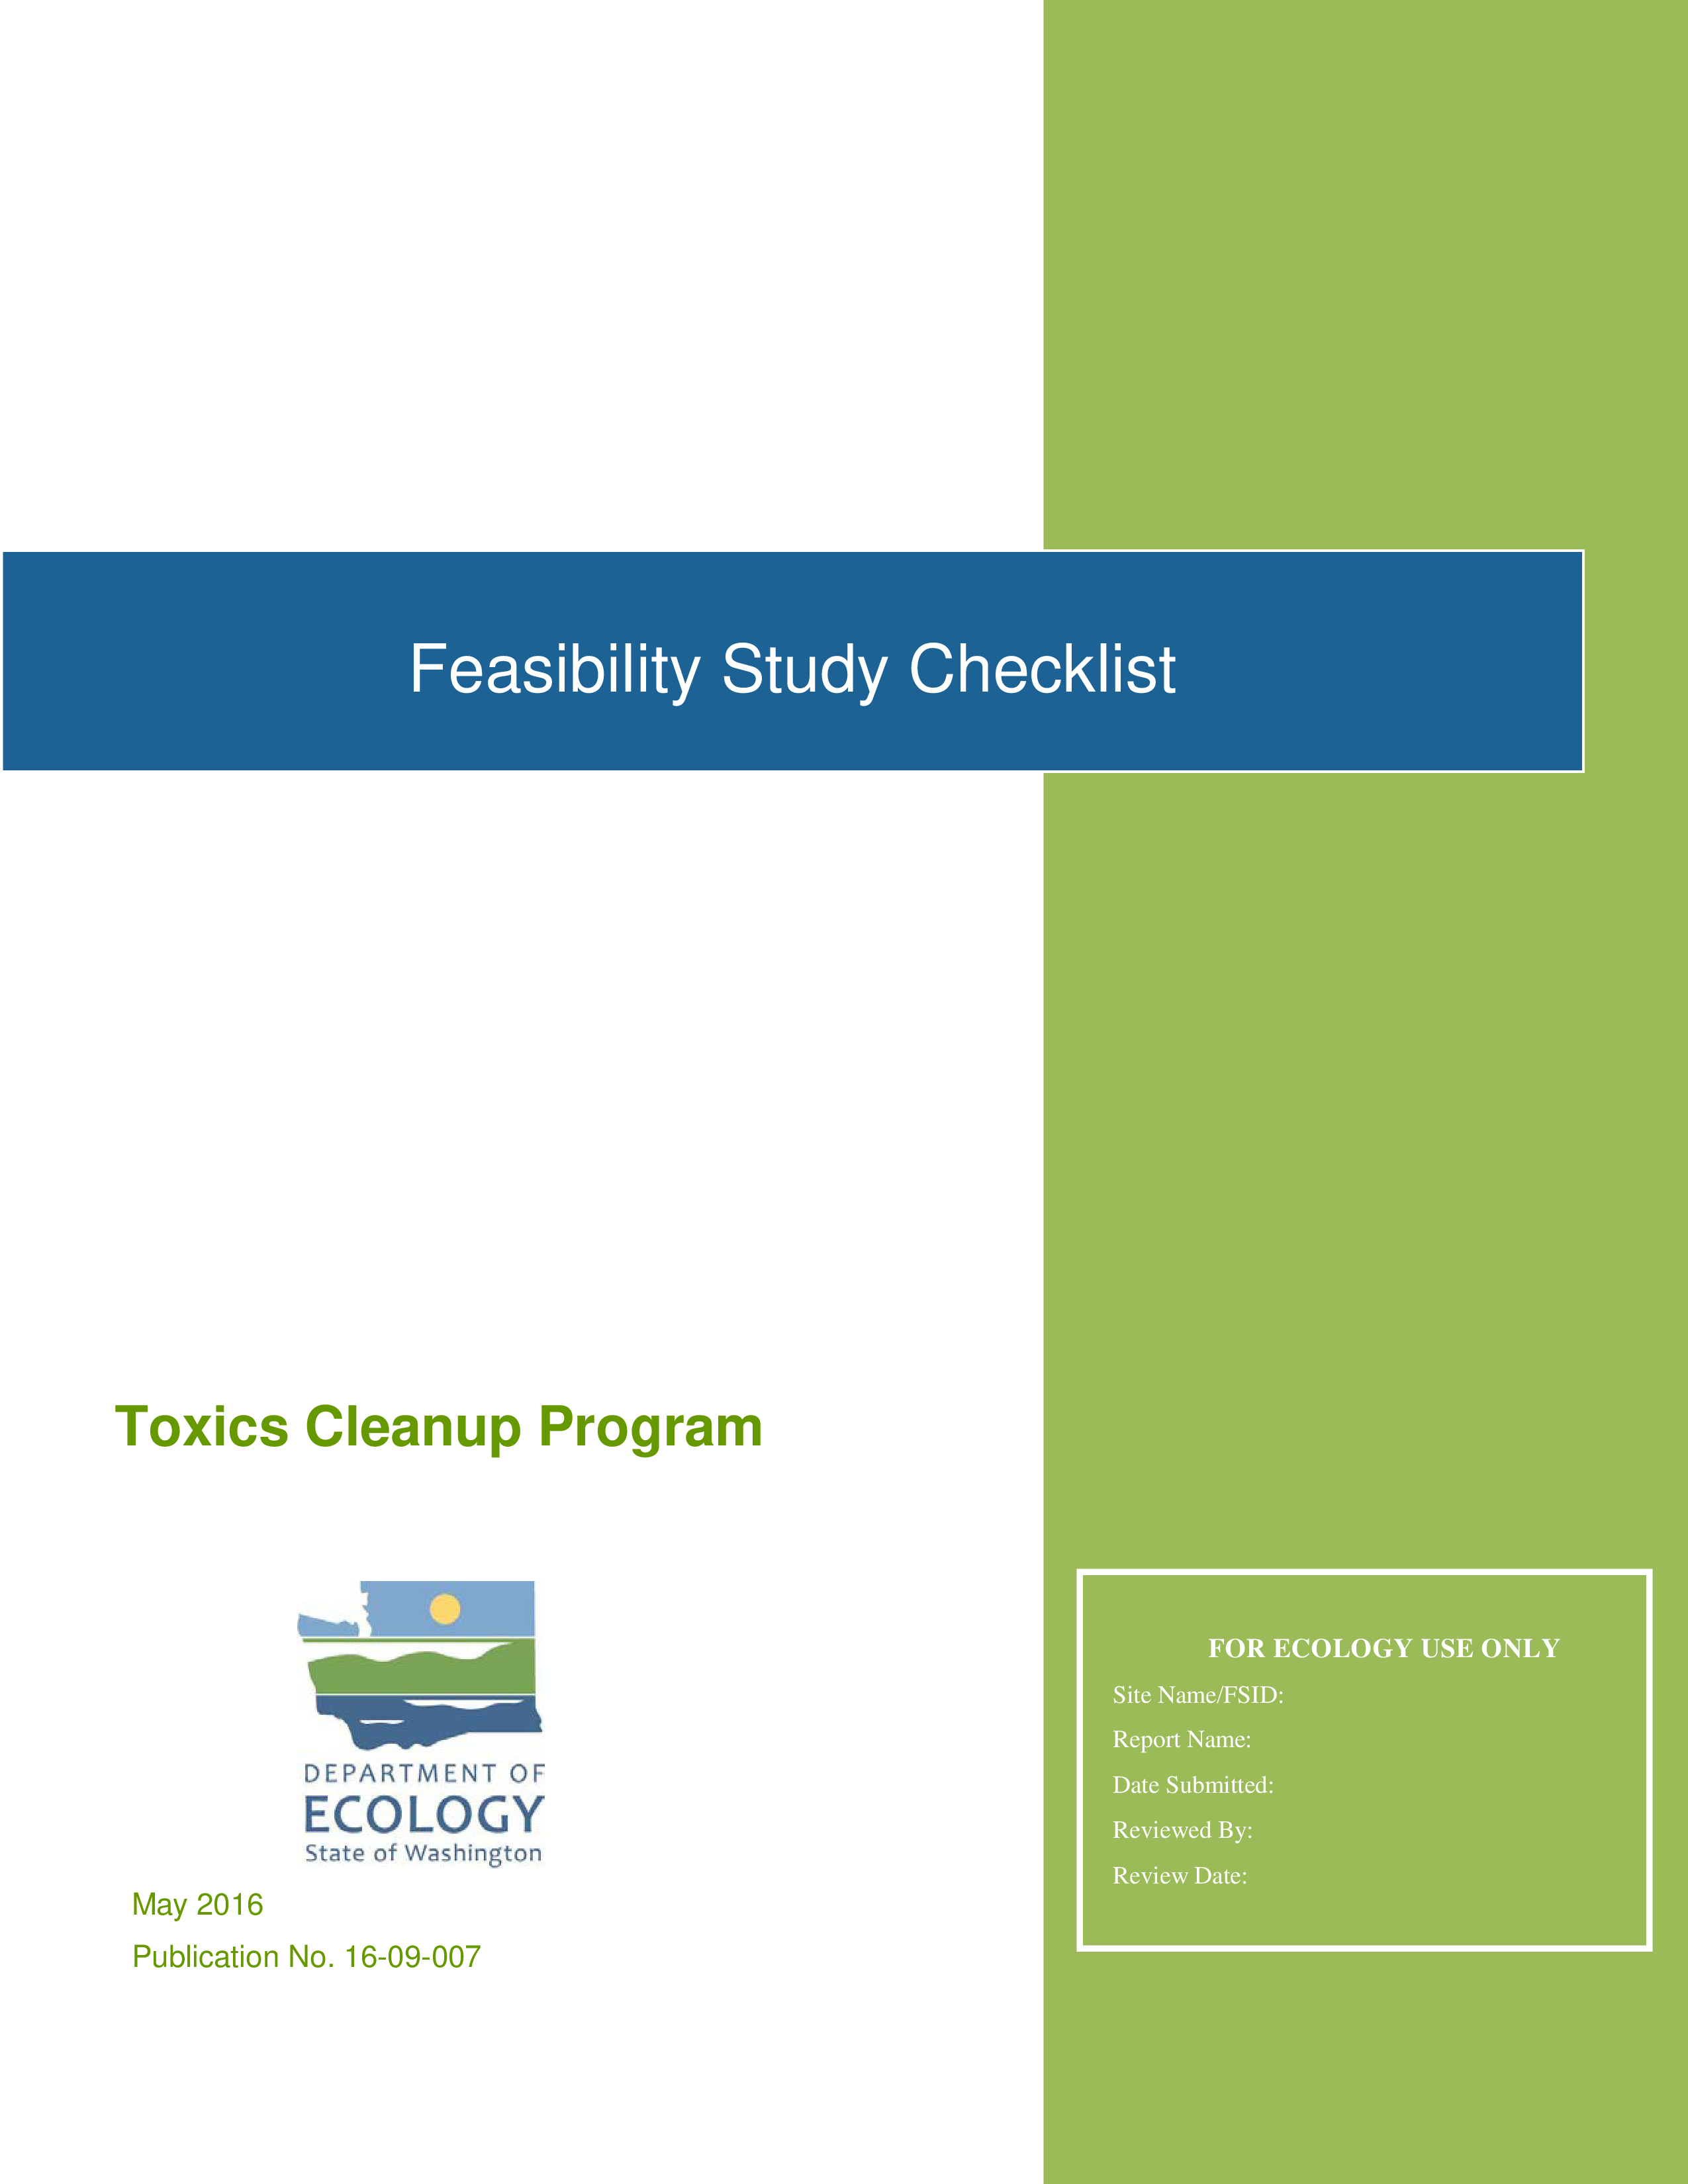 feasibility study checklist plantilla imagen principal